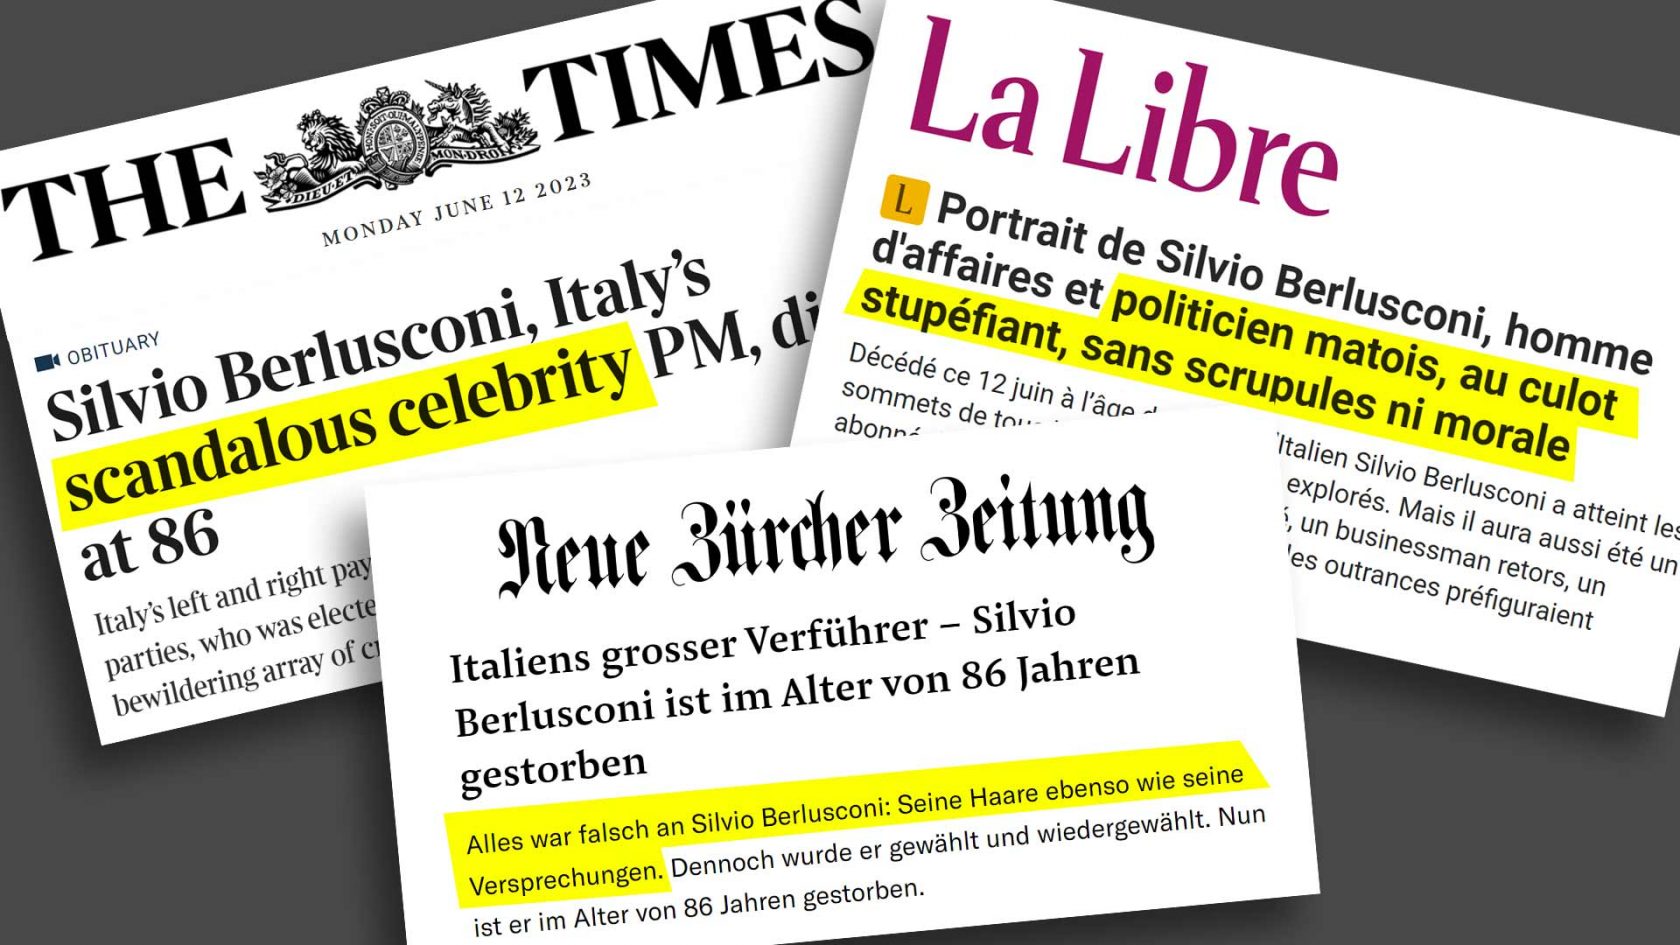 I giudizi spietati su Berlusconi nella stampa internazionale